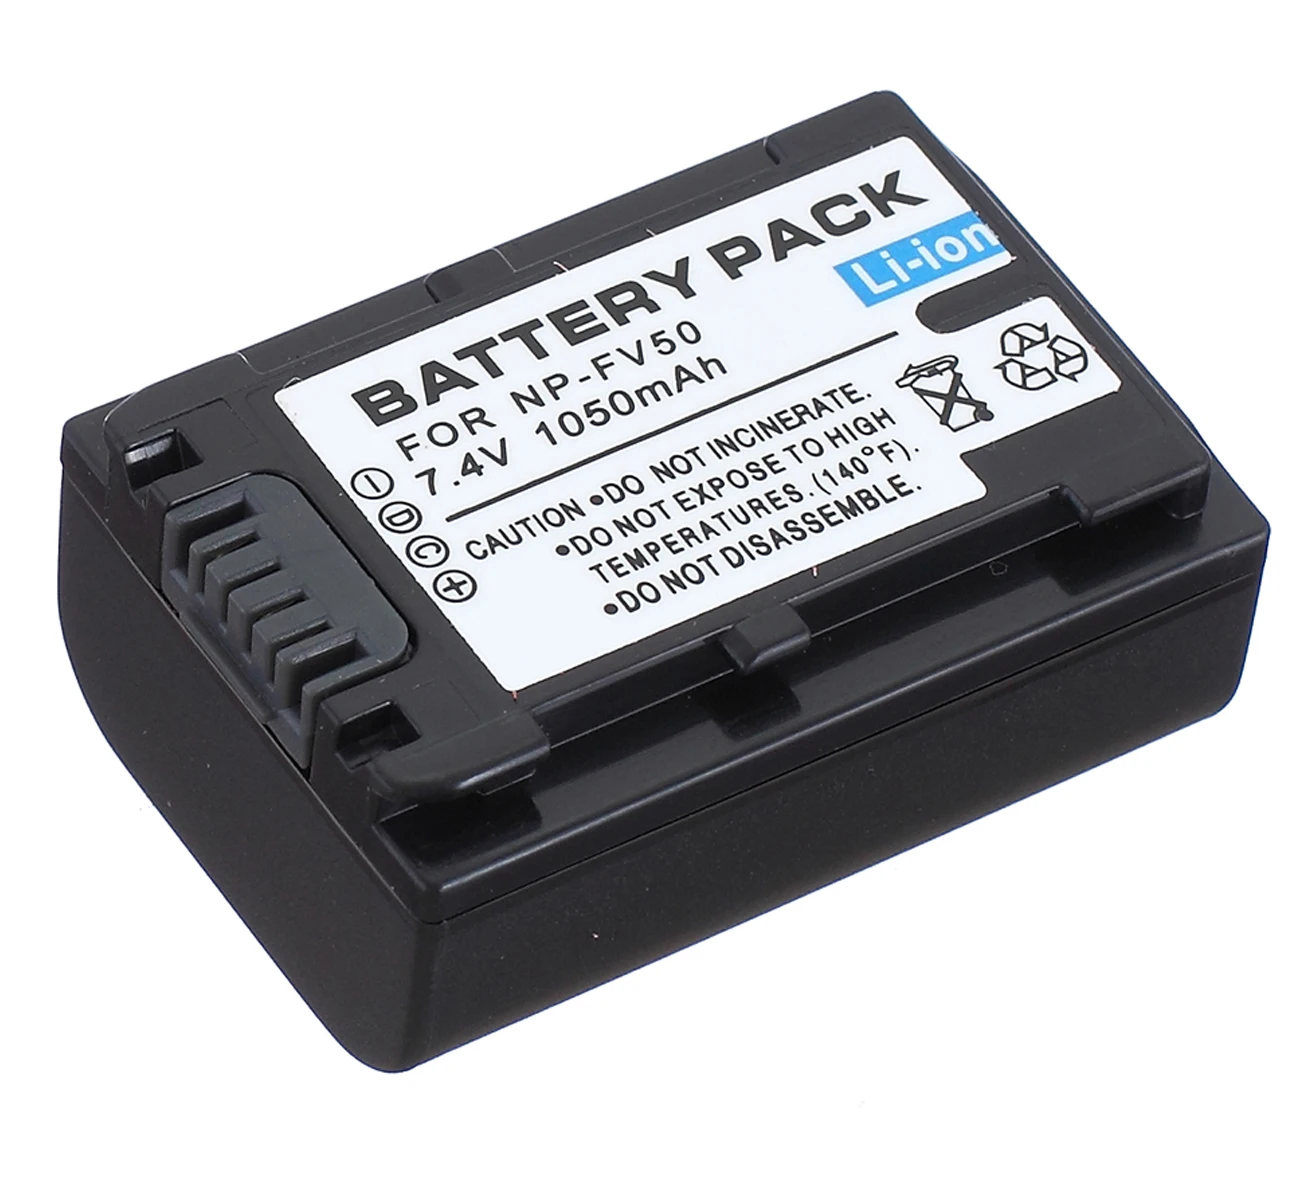 

Battery Pack for Sony DCR-PJ5, DCR-PJ6, HDR-PJ10, HDR-PJ20, HDR-PJ30V, HDR-PJ40V, HDR-PJ50V, HDR-PJ650V Handycam Camcorder